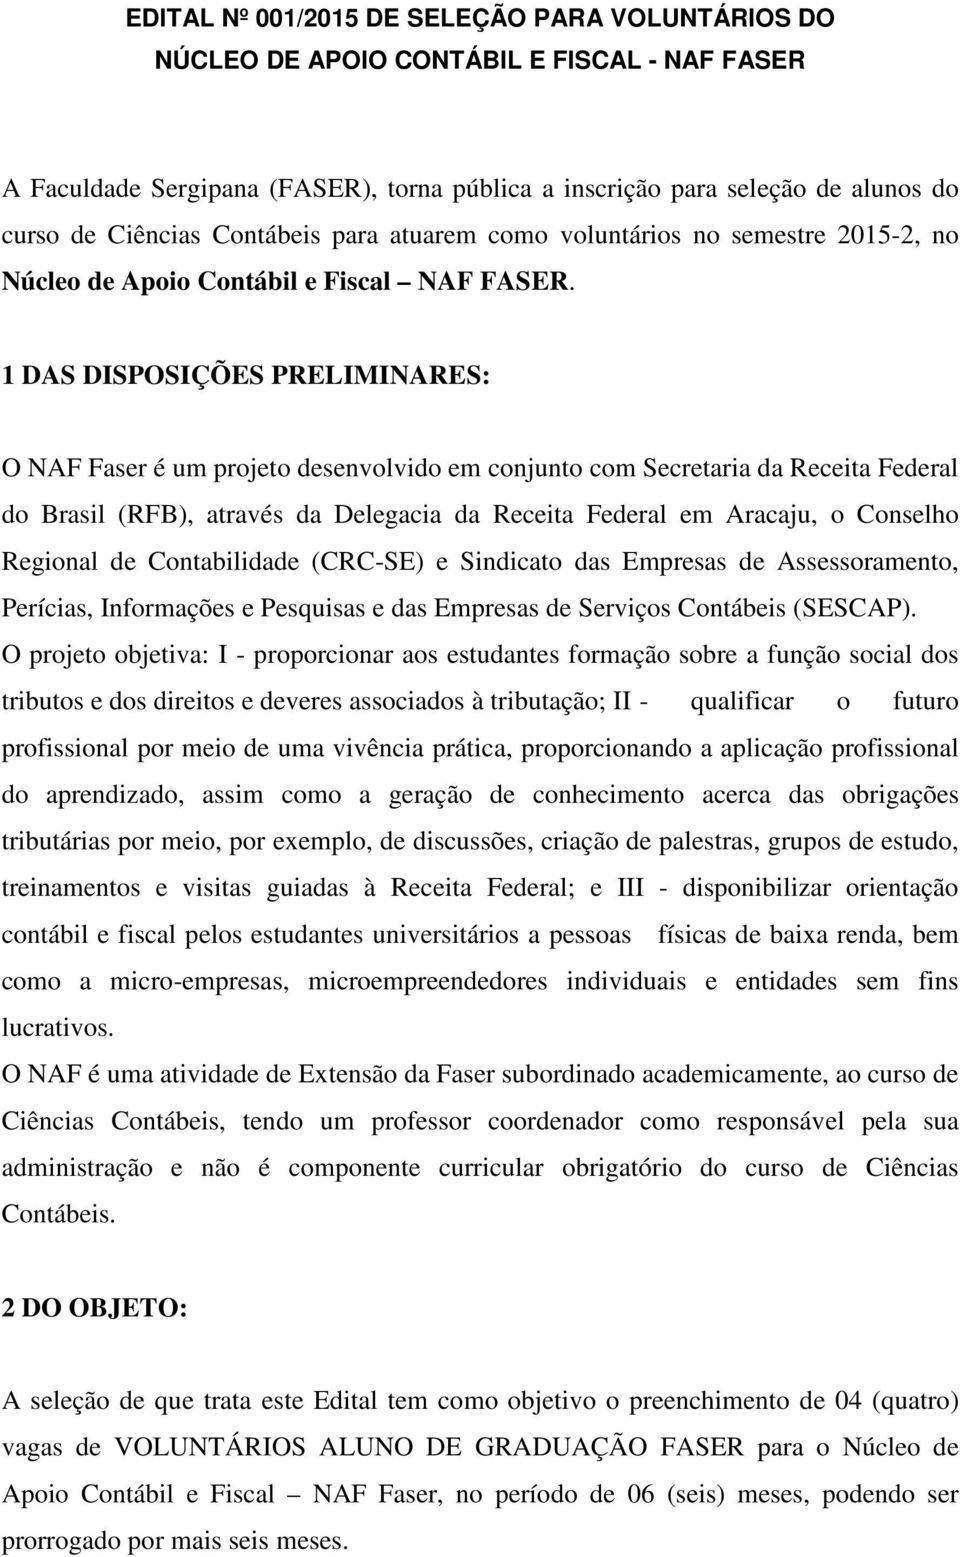 1 DAS DISPOSIÇÕES PRELIMINARES: O NAF Faser é um projeto desenvolvido em conjunto com Secretaria da Receita Federal do Brasil (RFB), através da Delegacia da Receita Federal em Aracaju, o Conselho